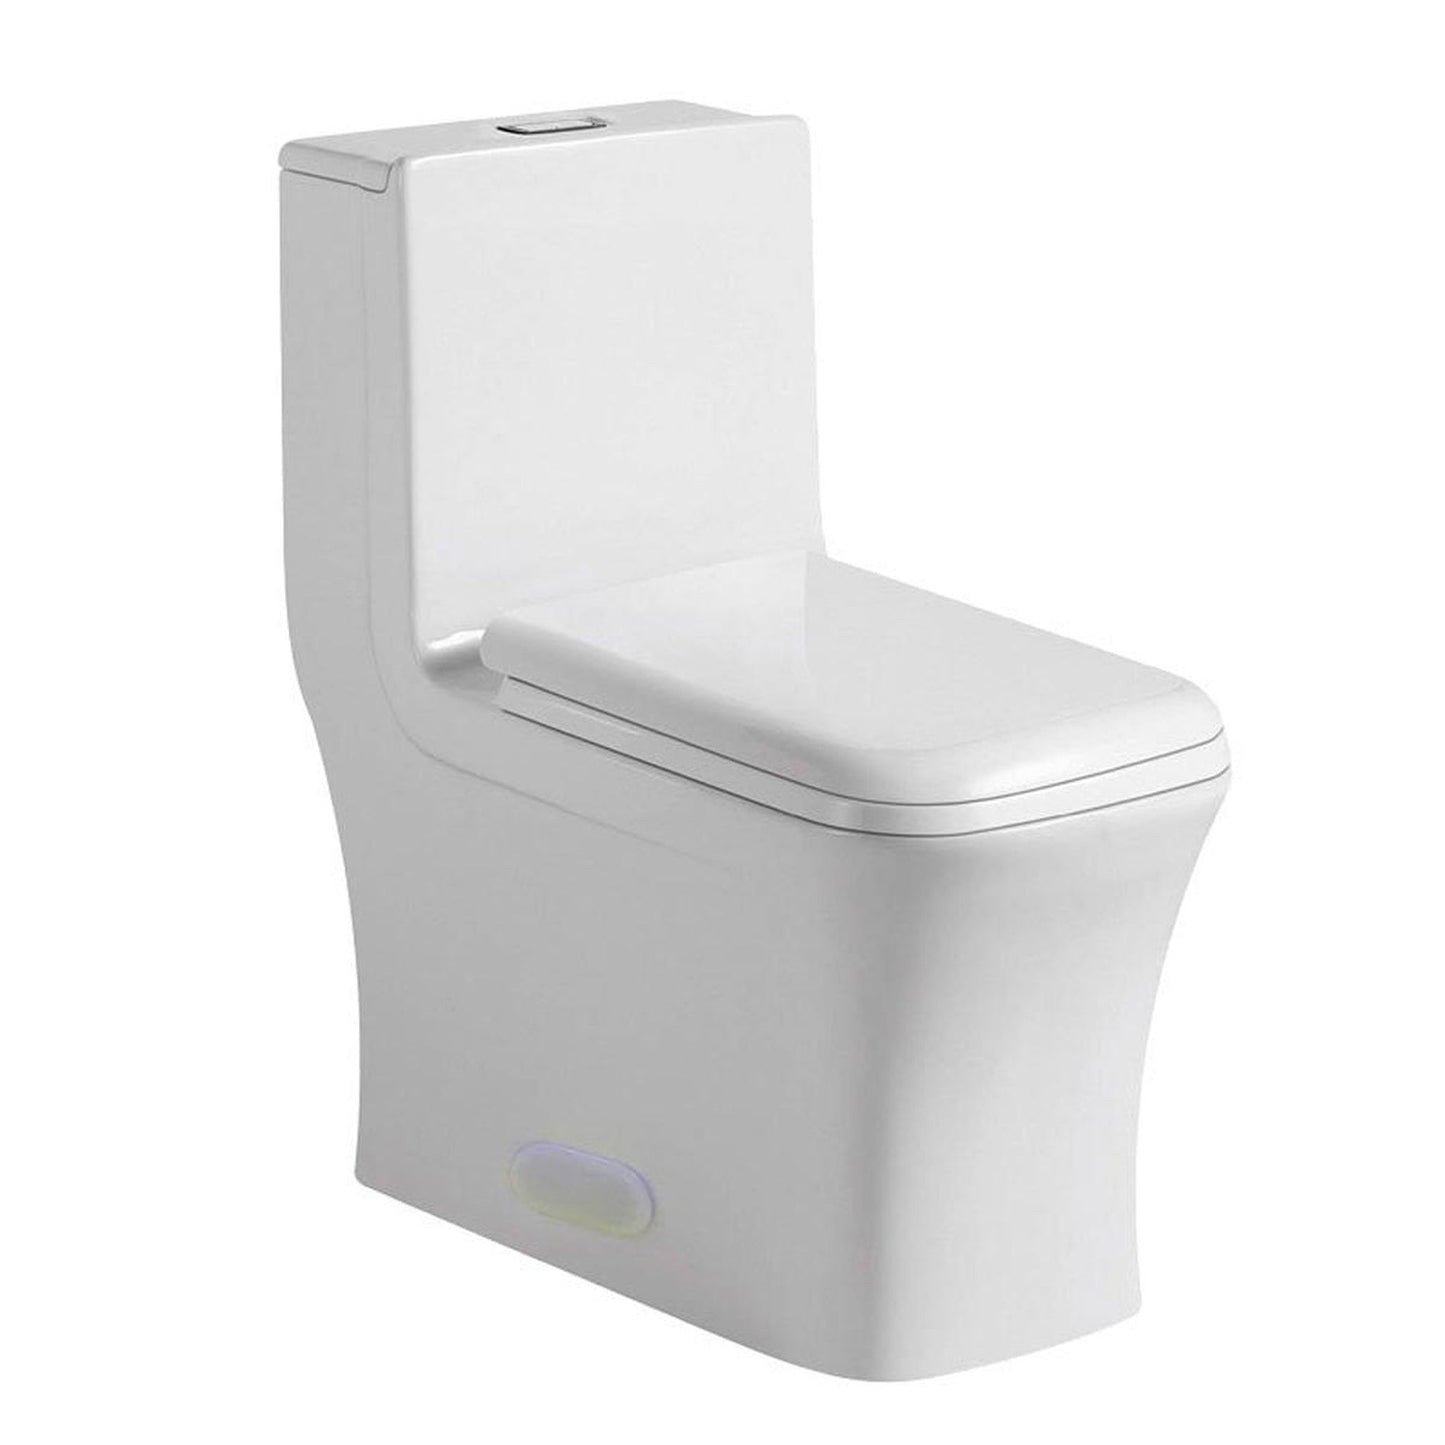 Pelican Int'l Vortex Series PL-12044 White Porcelain High Efficiency Toilet with Dual Flush